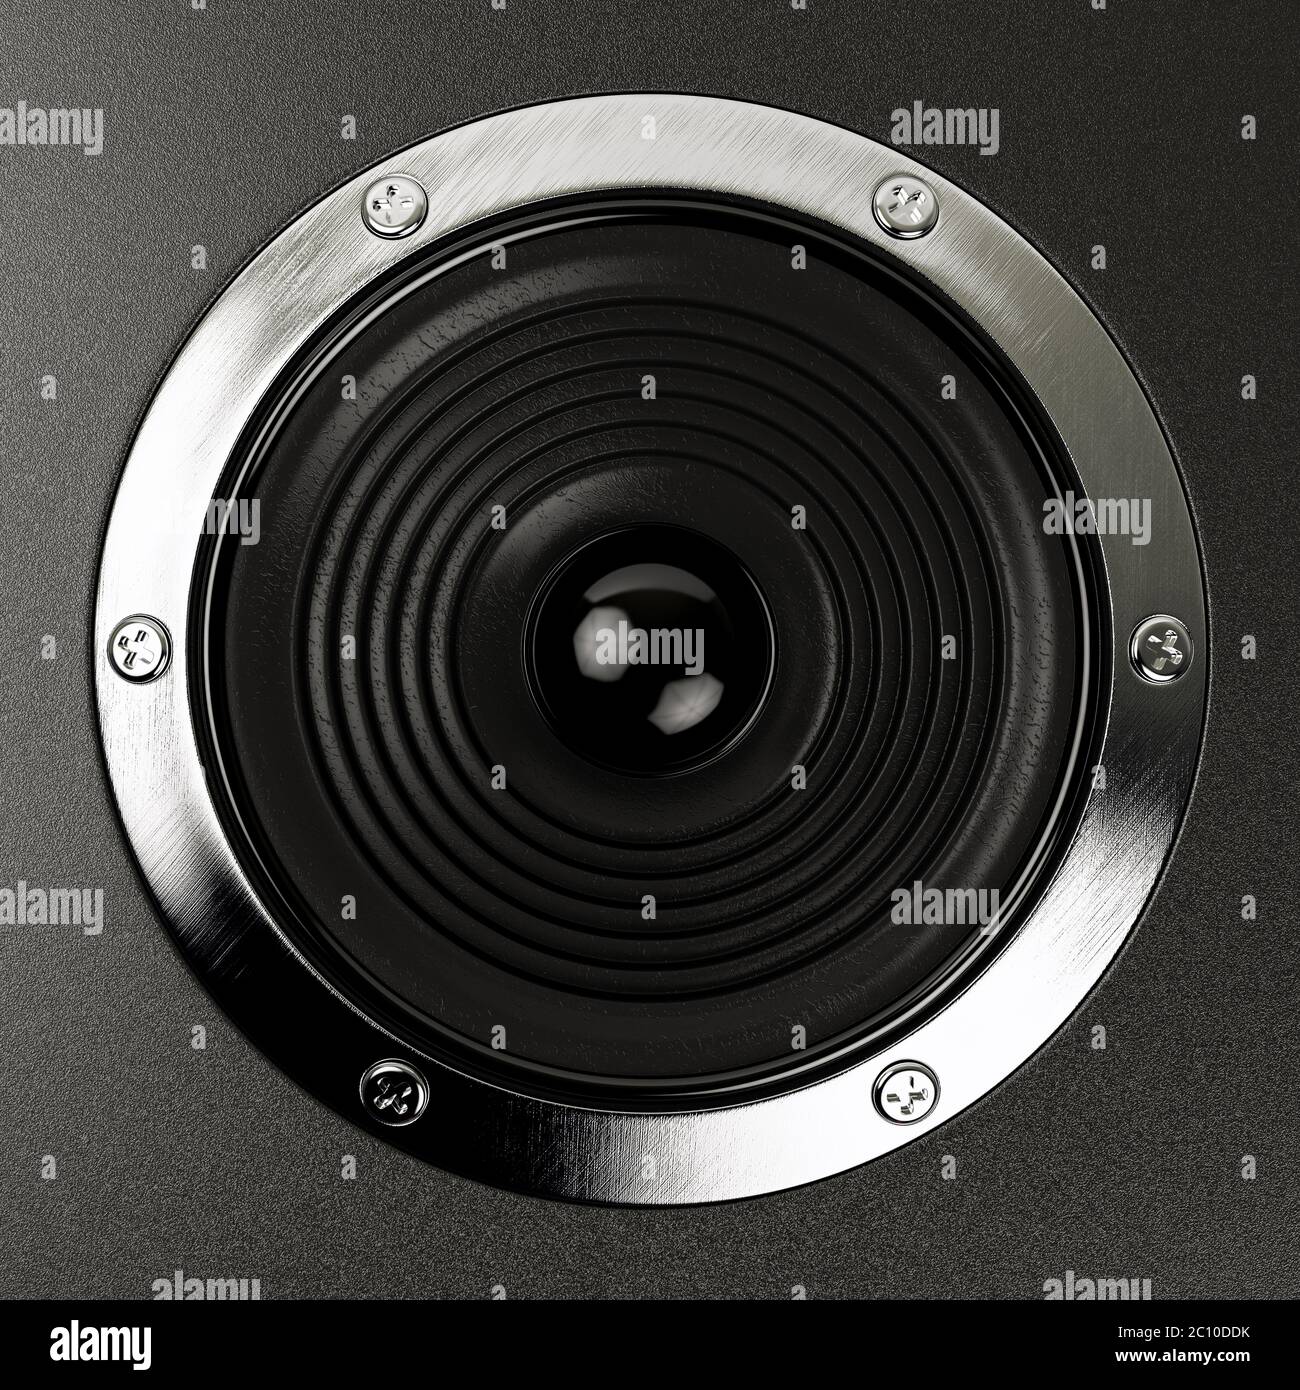 Altoparlanti impianto stereo Hi-Fi 3d illustrazione Foto Stock